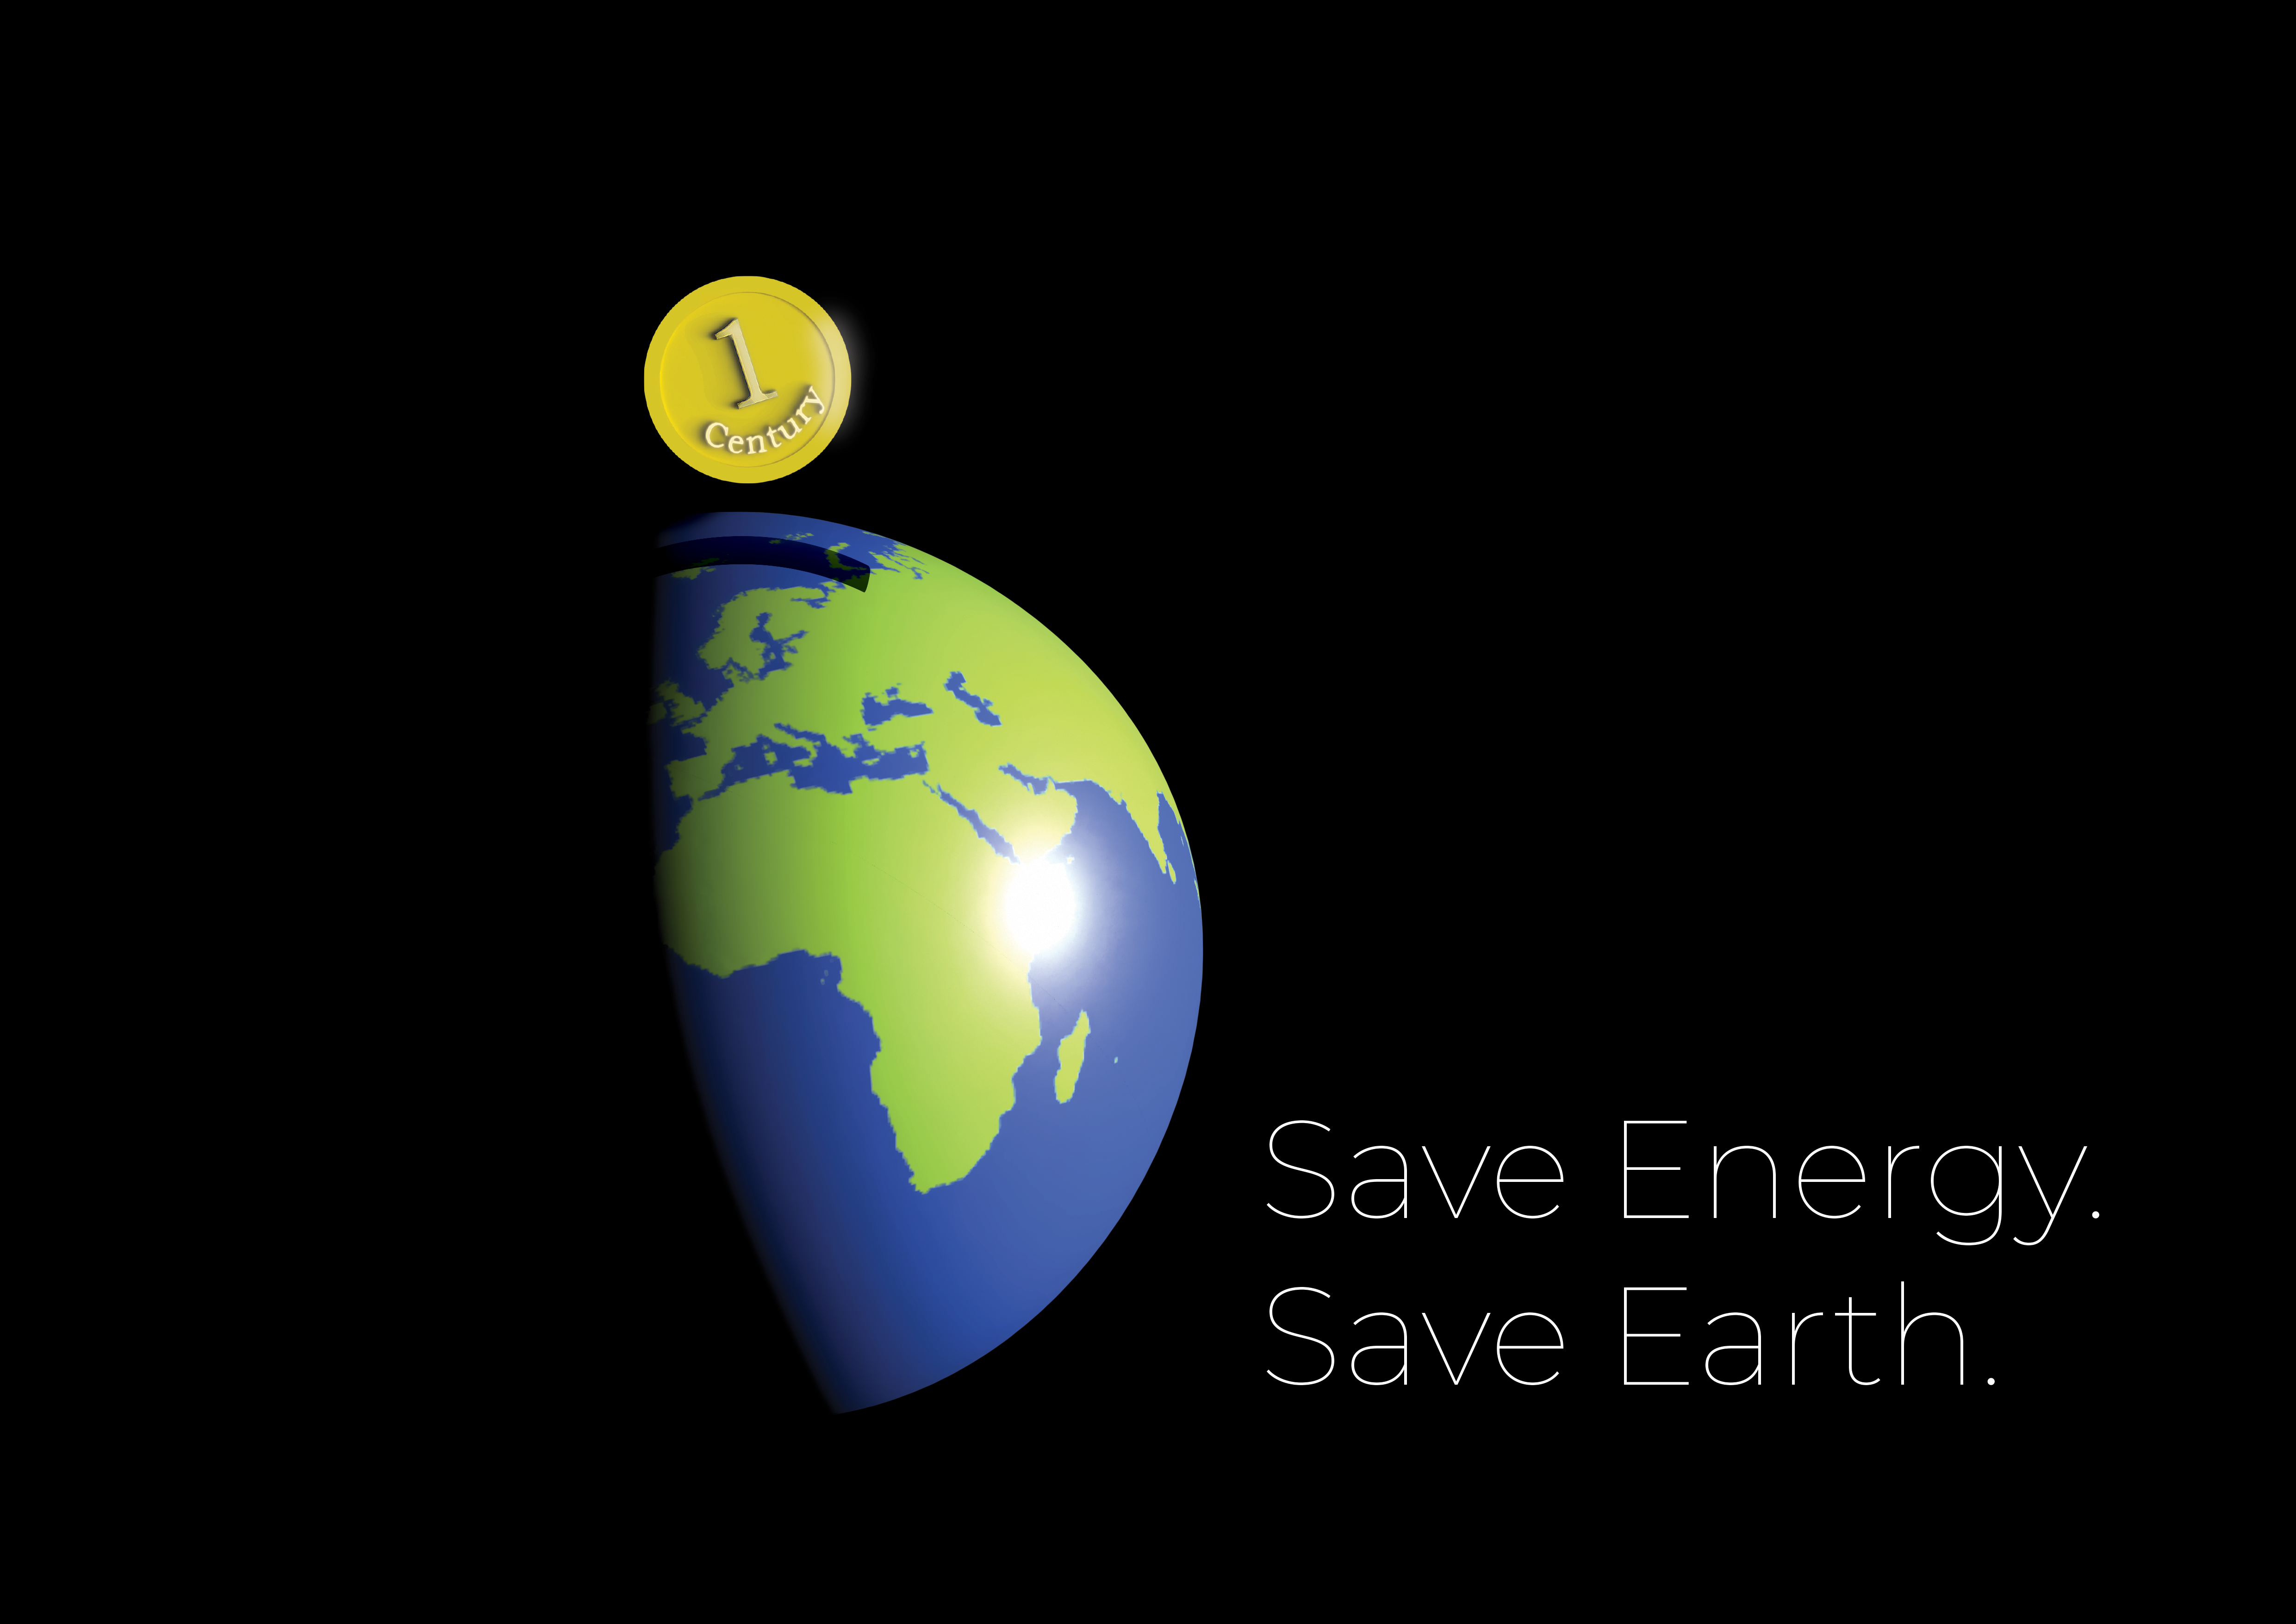 Save Energy. Save Earth.